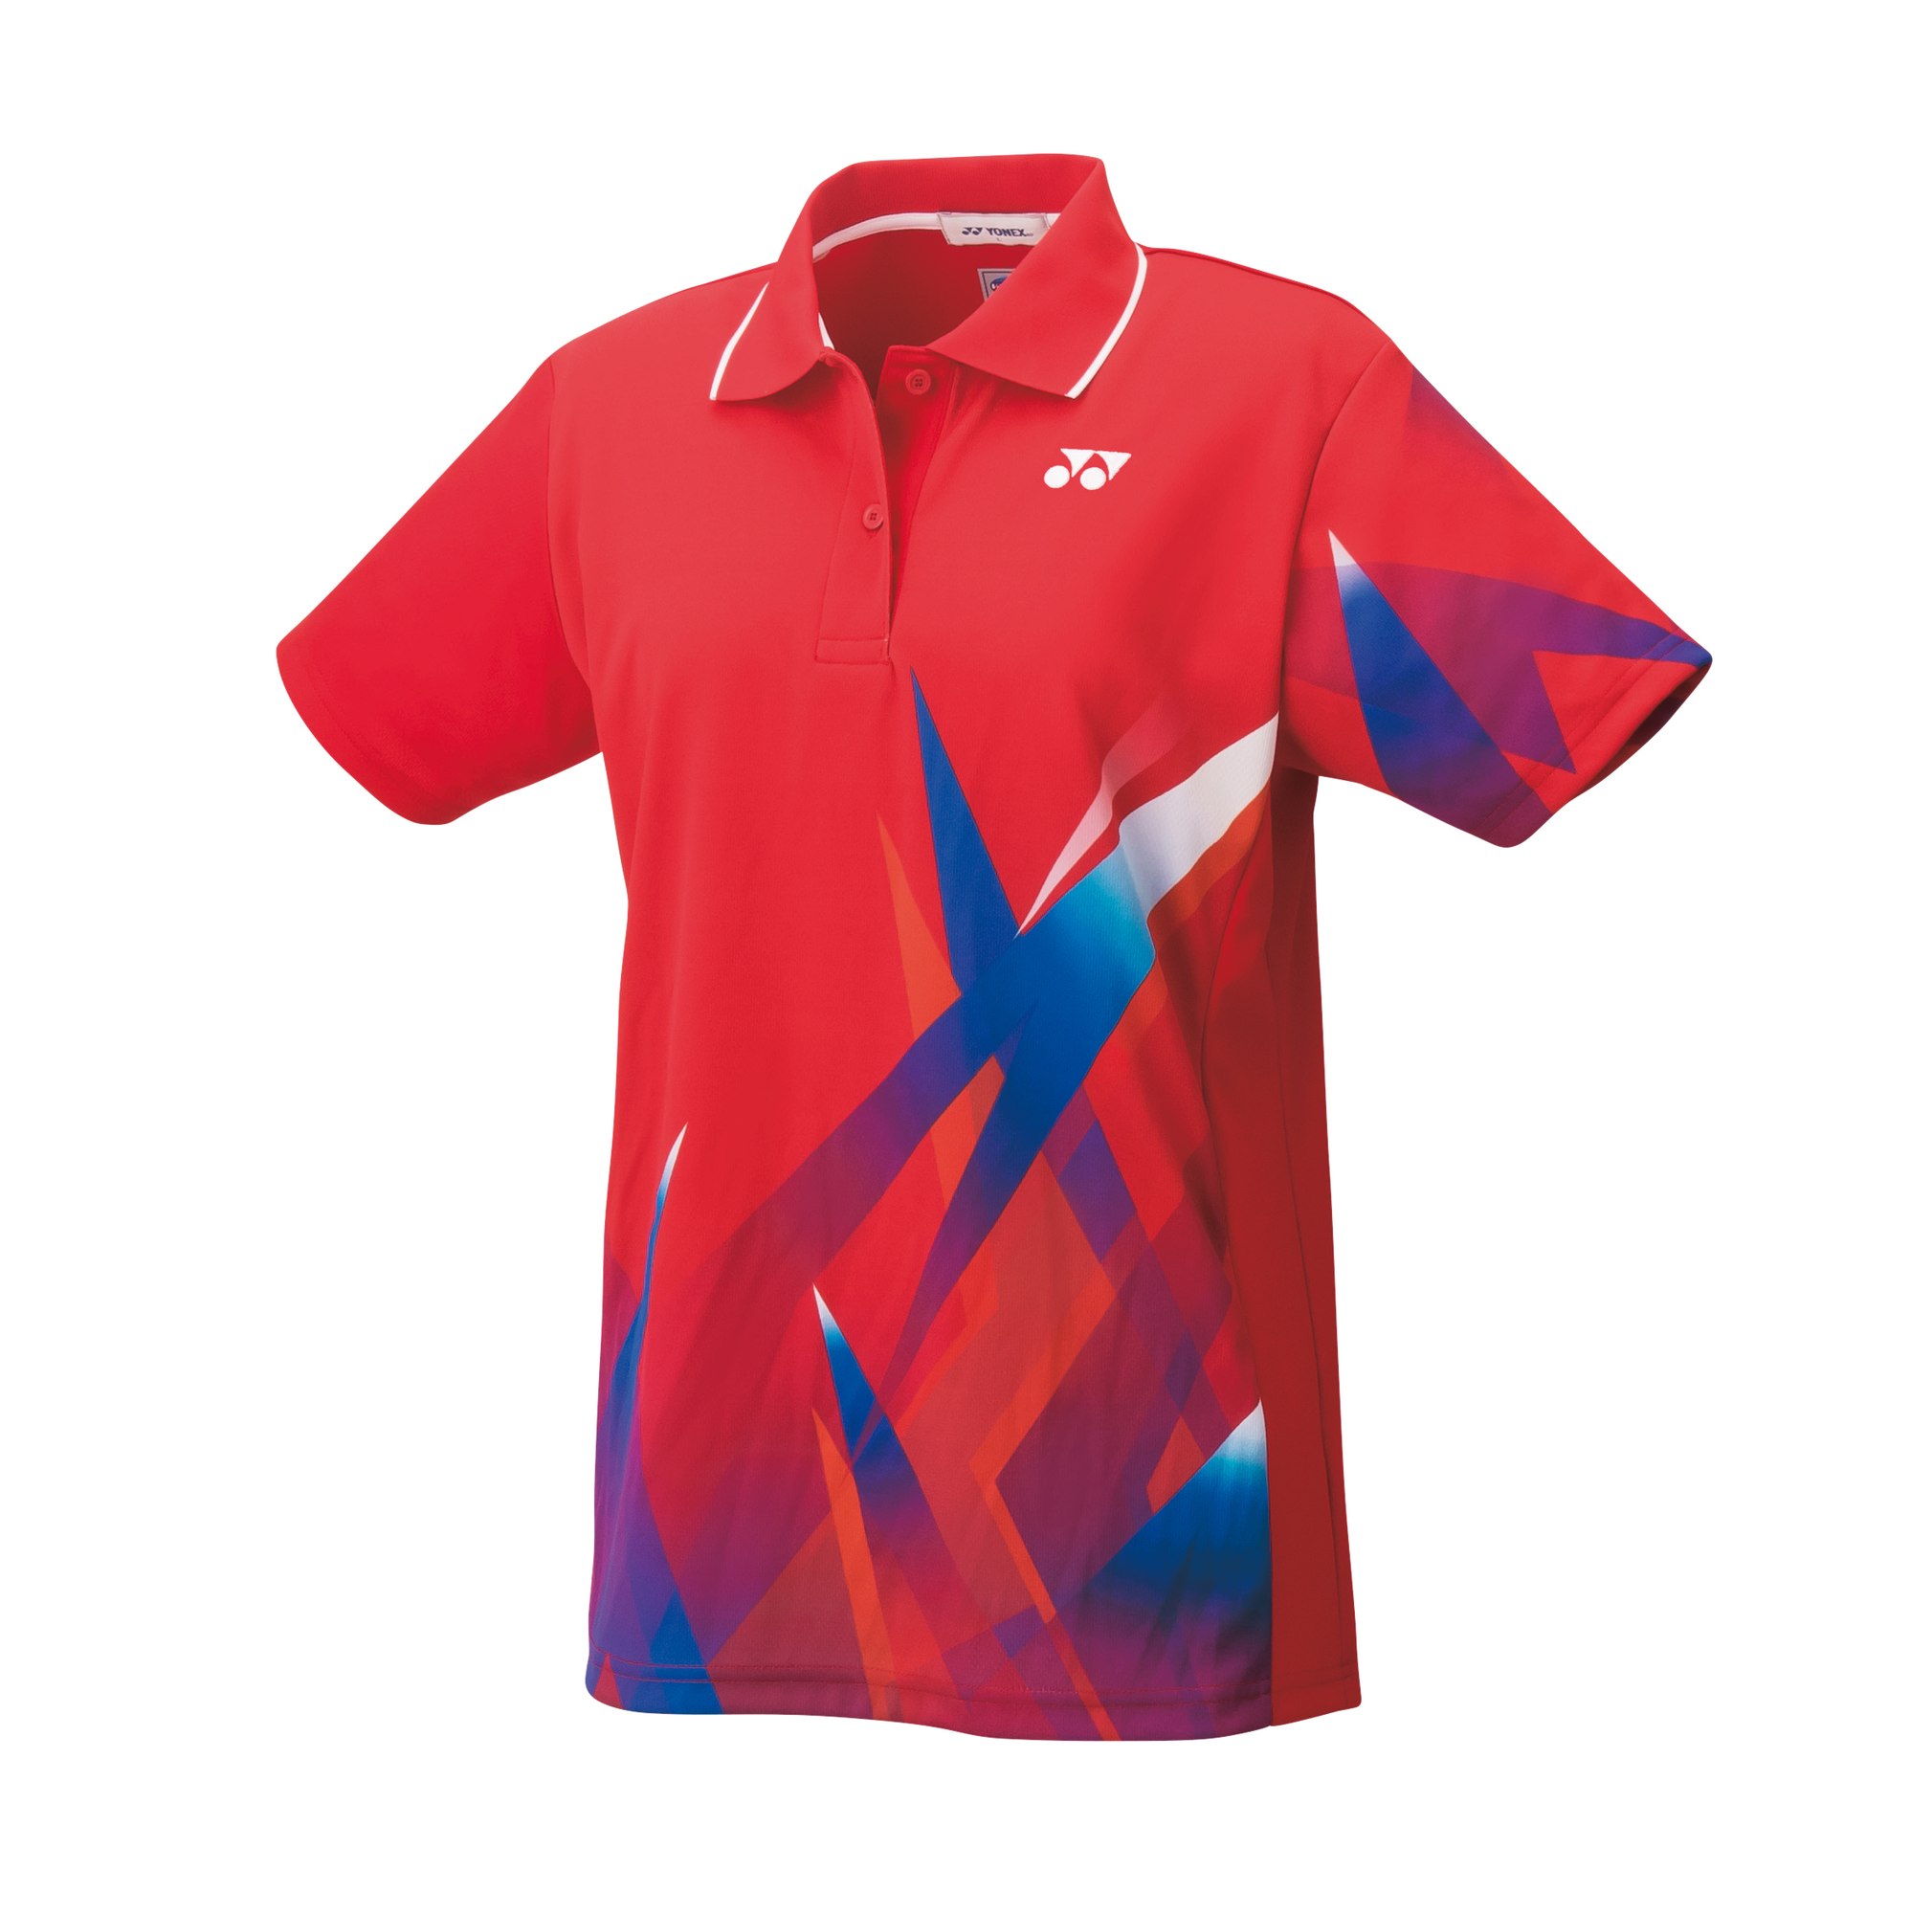 ヨネックス Yonex テニス Game Shirts ウェア ウィメンズ ゲームシャツ サンセットレッド 496 M 559 色違い 以下からお 探し下さい関連商品の検 Painandsleepcenter Com